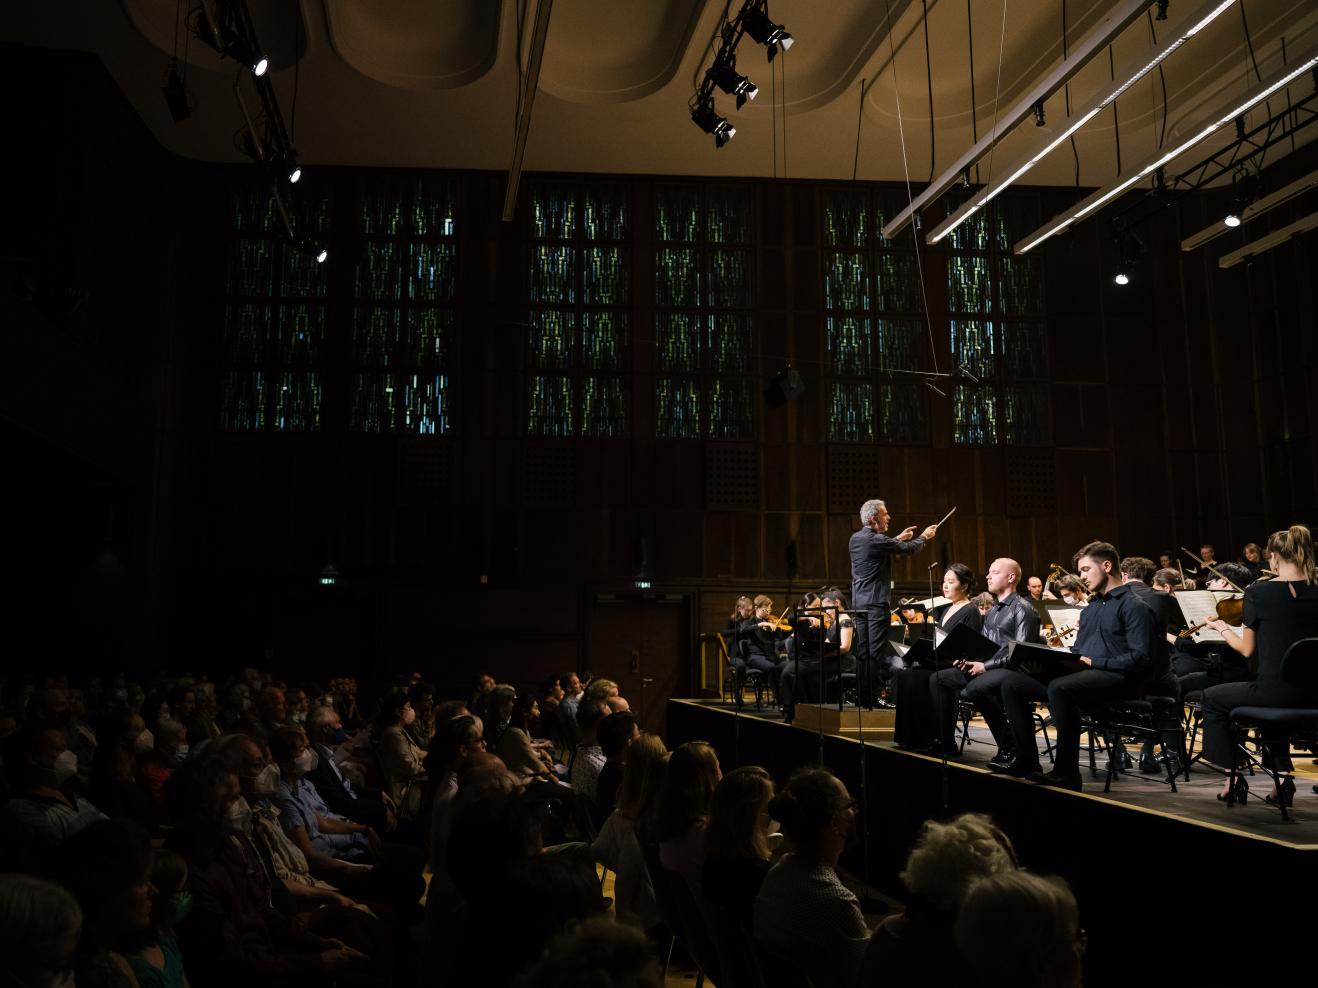 Orchesterkonzert im Großen Saal der HfMDK, Aufnahme von der Seite: Das Publikum ist links im Bild zu sehen, rechts die Bühne mit den Musiker*innen.